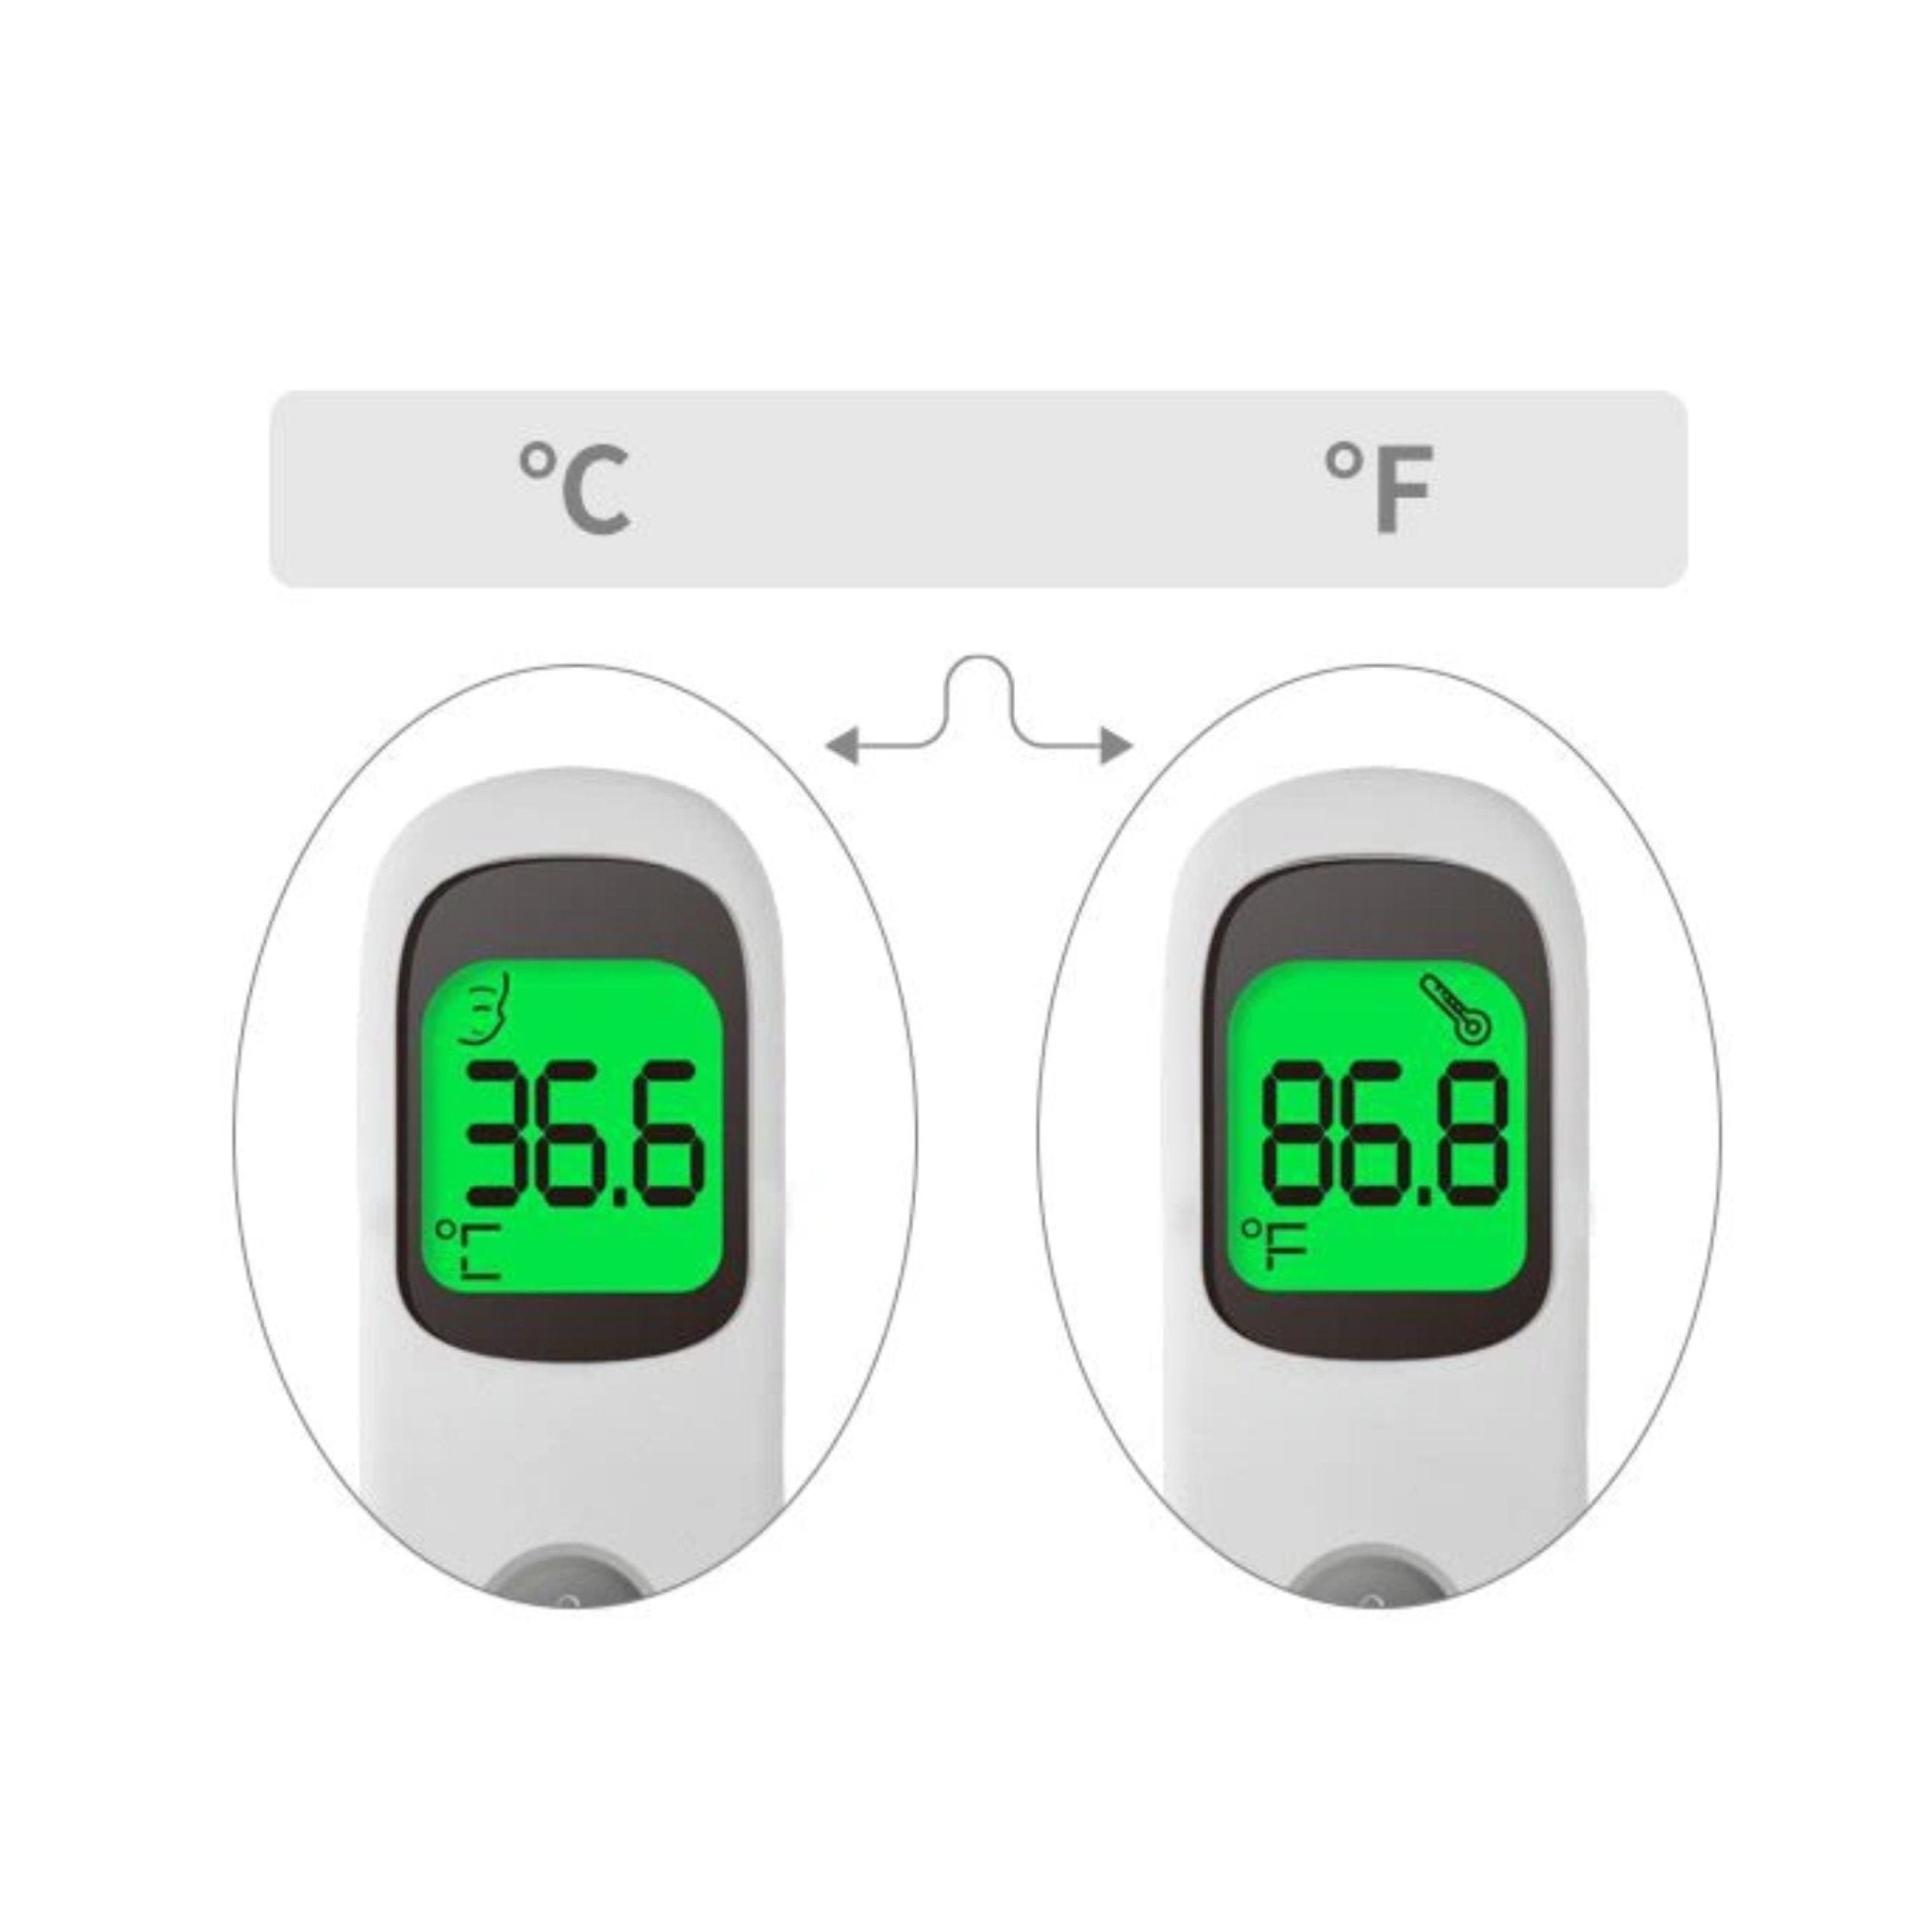 VAPO Medical Thermometer VP-T2 - White